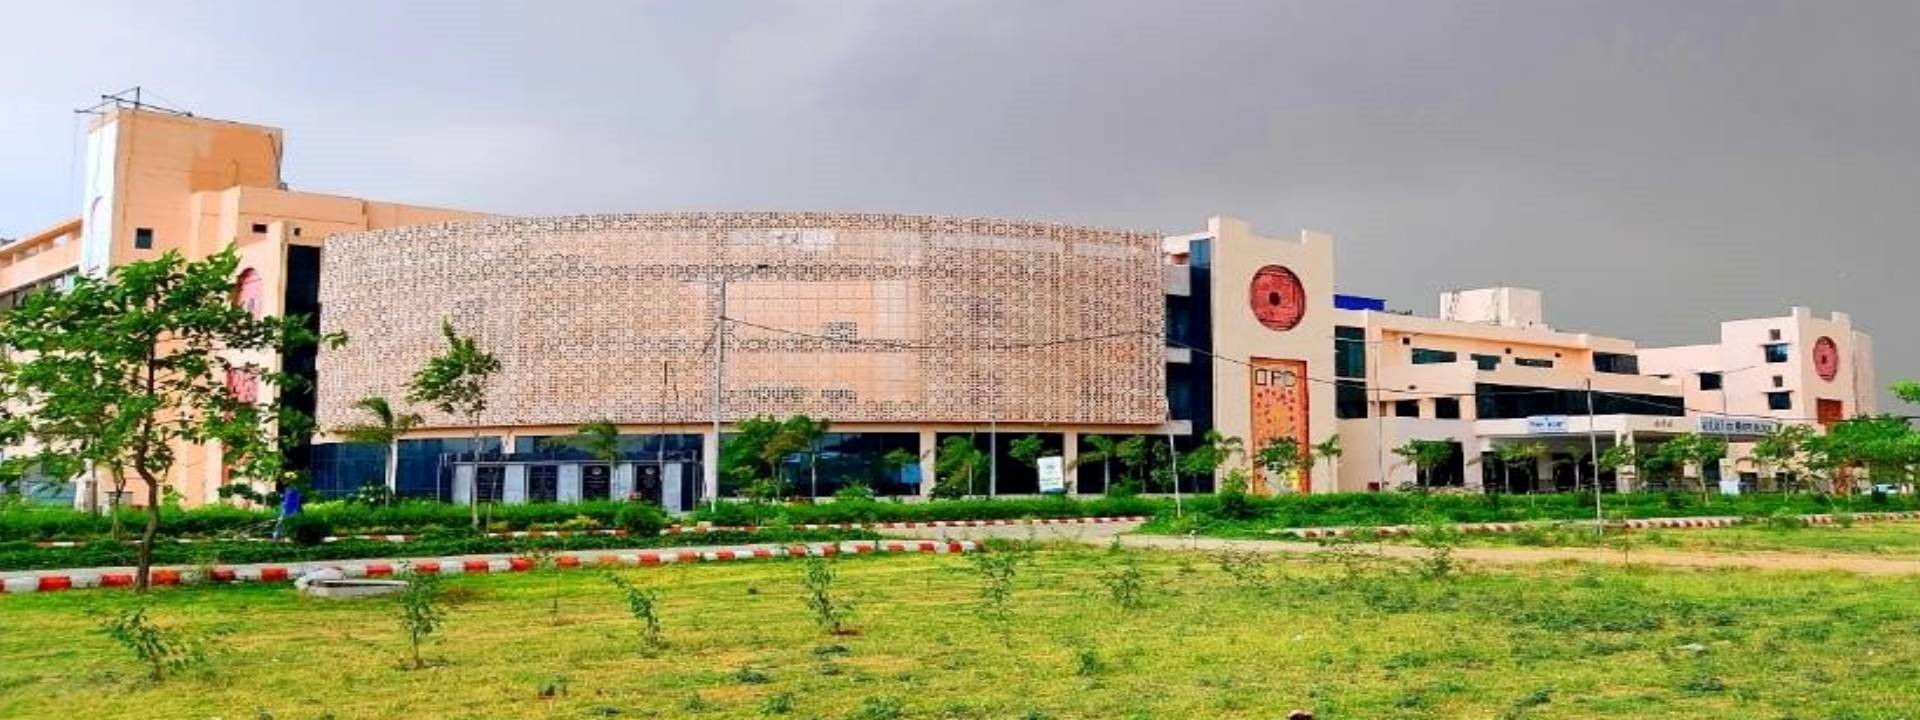 All India Institute of Medical Sciences, Gorakhpur, Uttar Pradesh